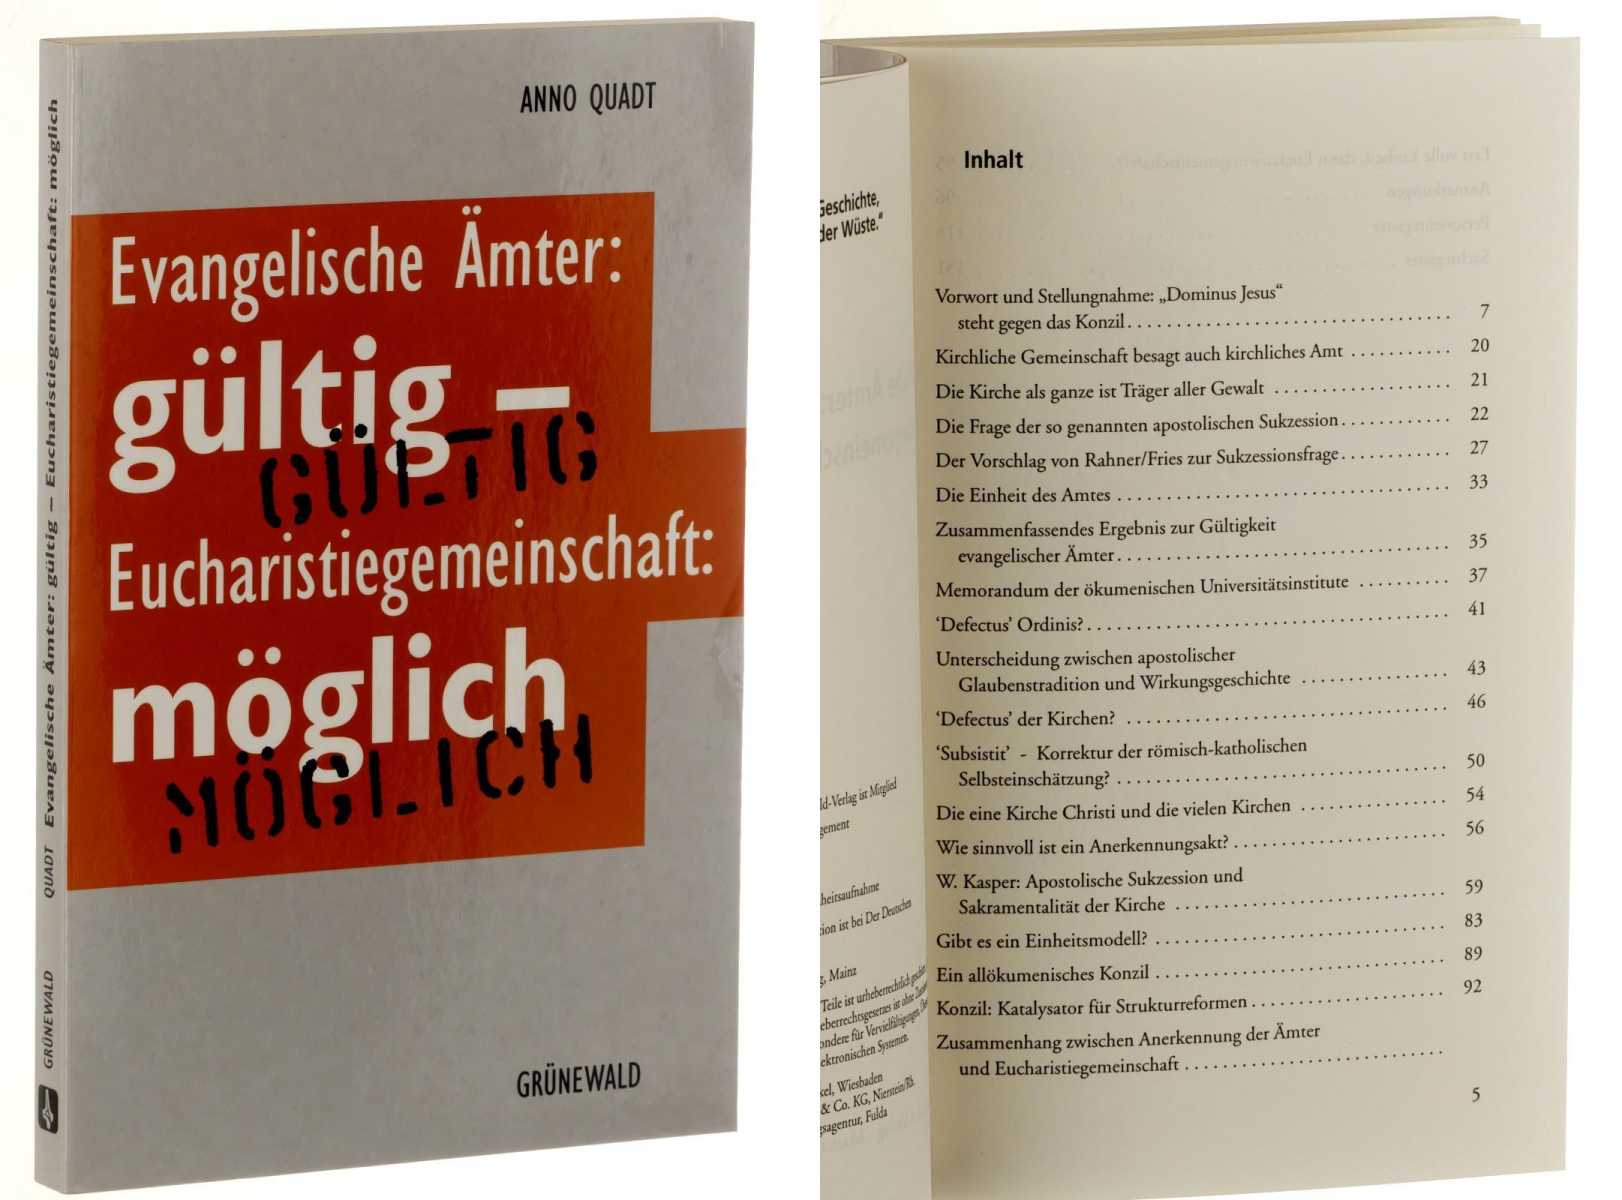 Quadt, Anno:  Evangelische Ämter: gültig - Eucharistiegemeinschaft: möglich. 